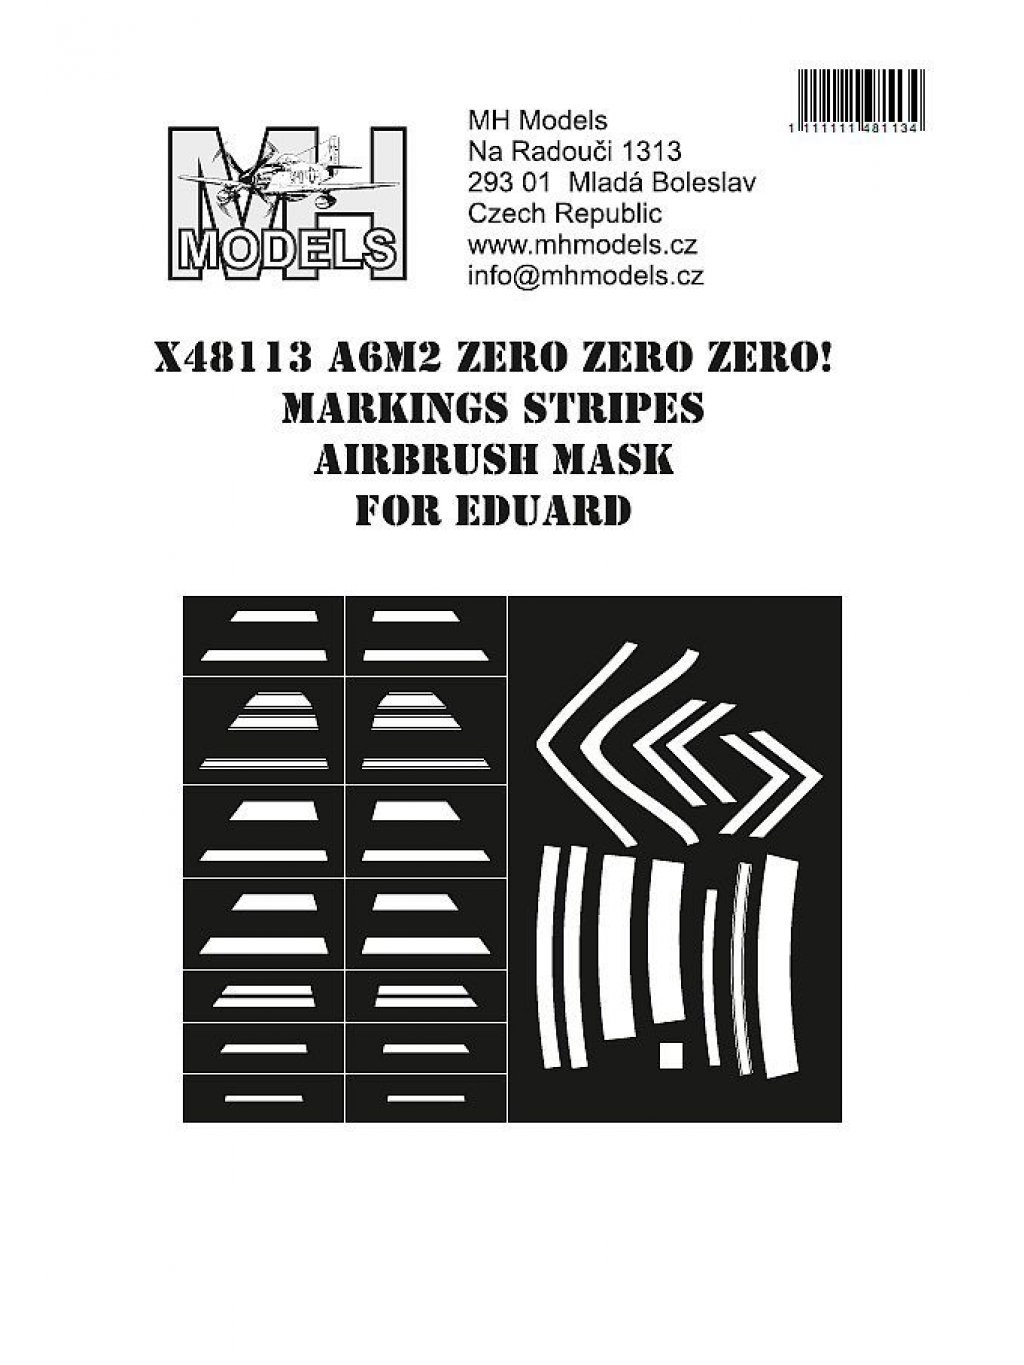 A6M2 Zero Zero Zero! Markings stripes airbrush mask for Eduard